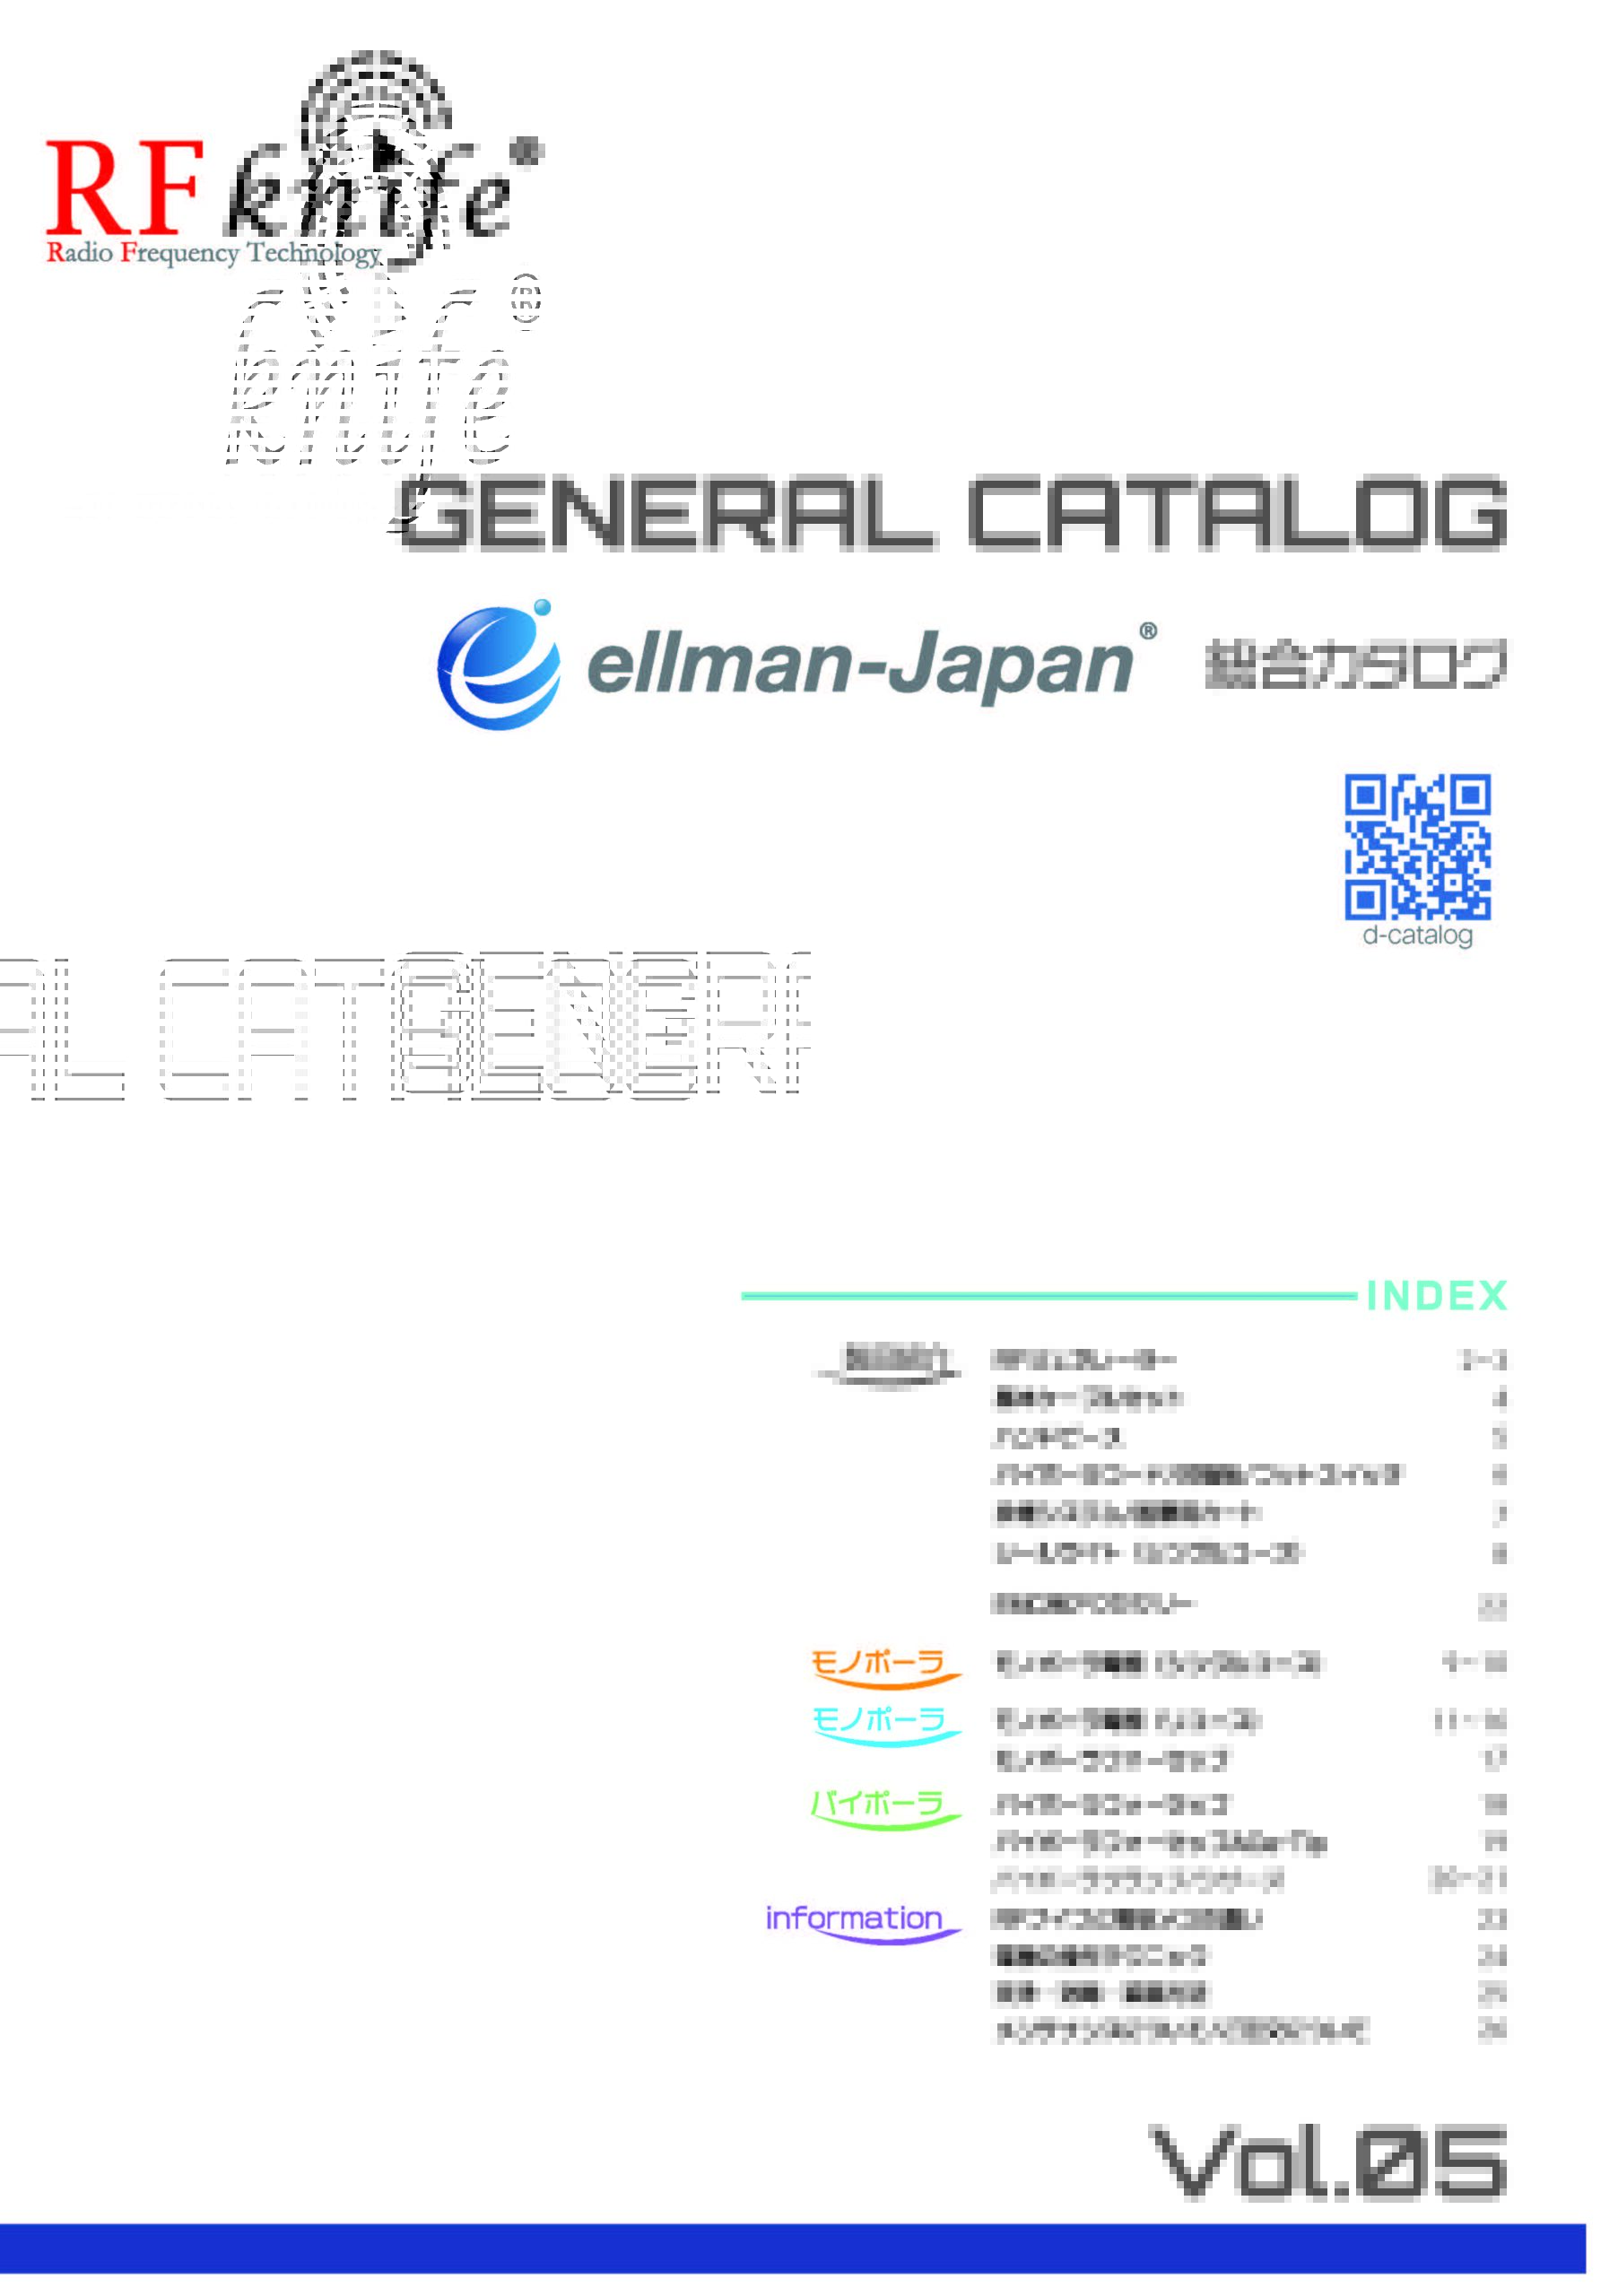 ellman-Japan製品総合カタログVol.5